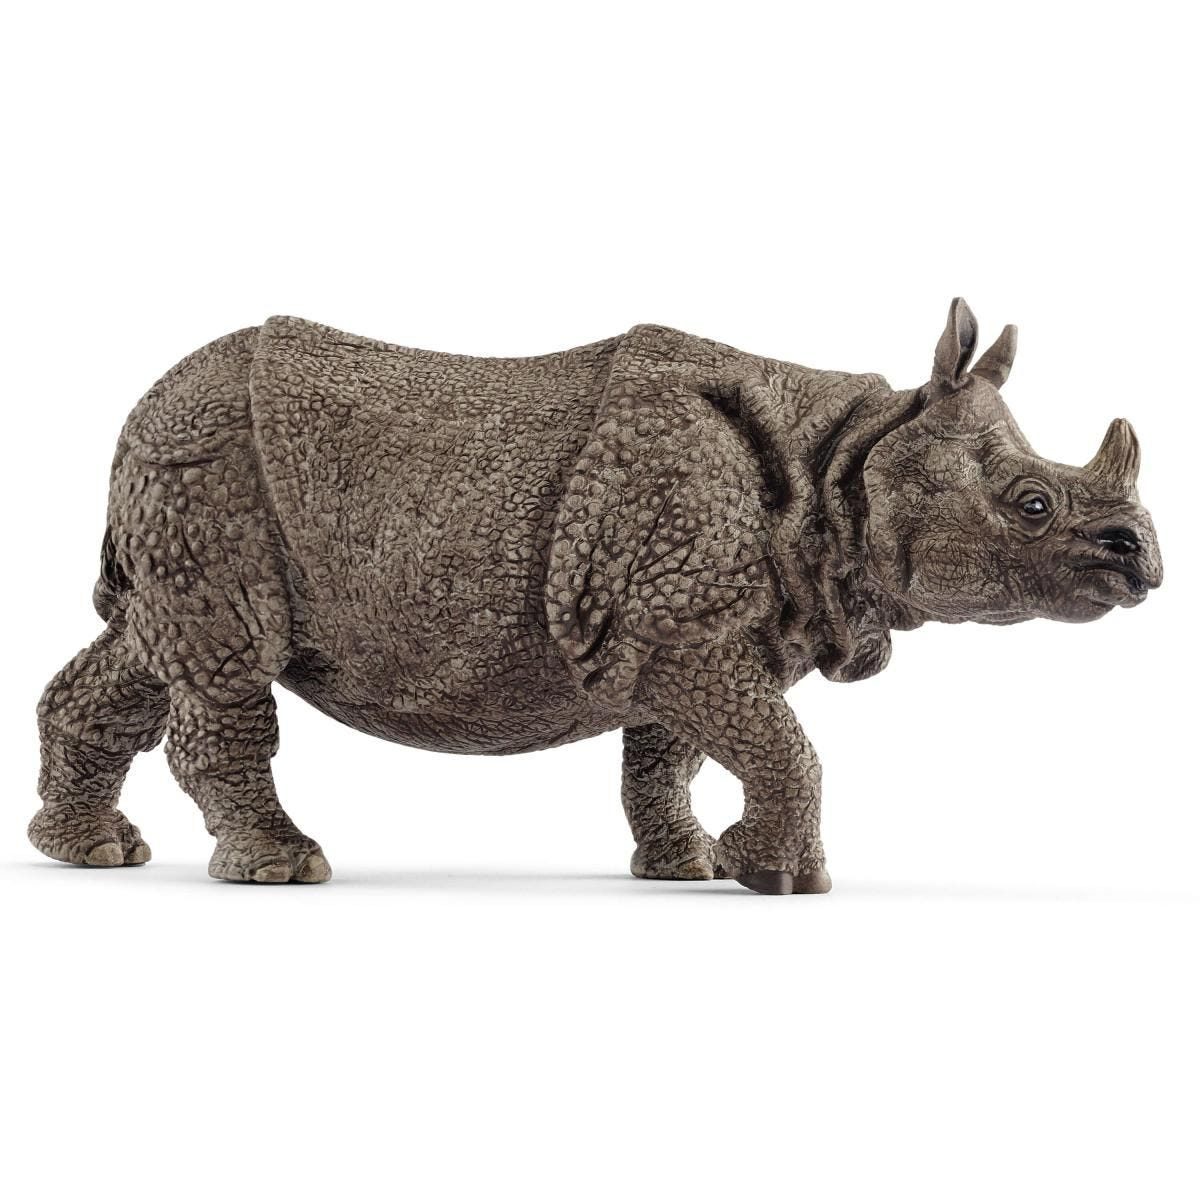 Indian rhinoceros 14816